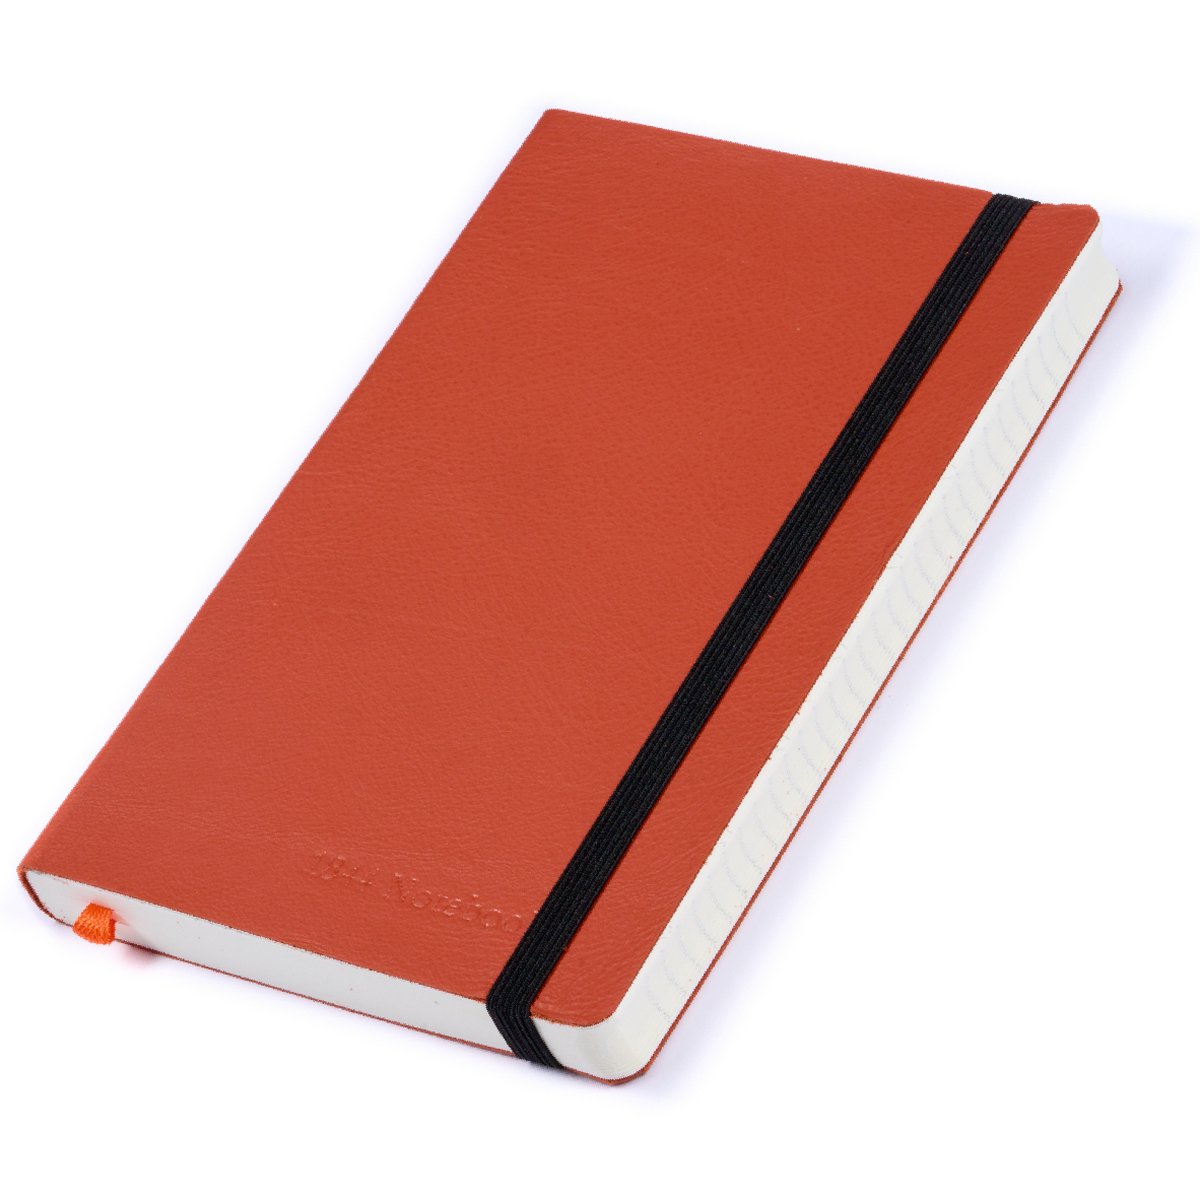 Notitieboek - Notebook A5 - Moederdag cadeau - Cadeau voor man - Notitieboekje - Handgemaakt van leer - Notebook - Notitieblok - Red Orange - oranje - 1844 Notebooks